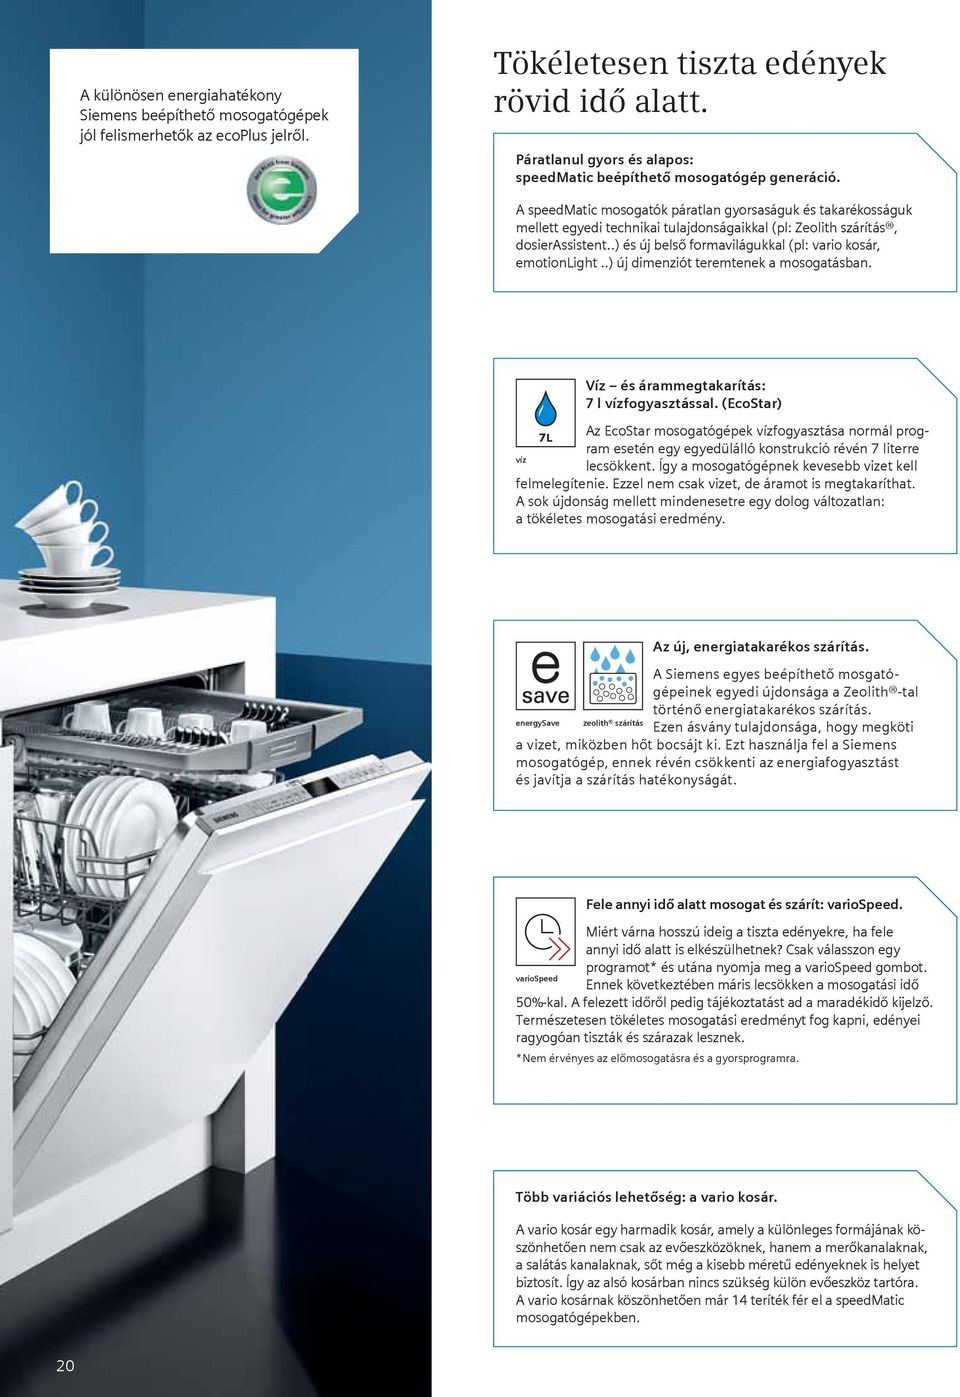 A speedmatic mosogatók páratlan gyorsaságuk és takarékosságuk mellett egyedi technikai tulajdonságaikkal (pl: Zeolith szárítás, dosierassistent.